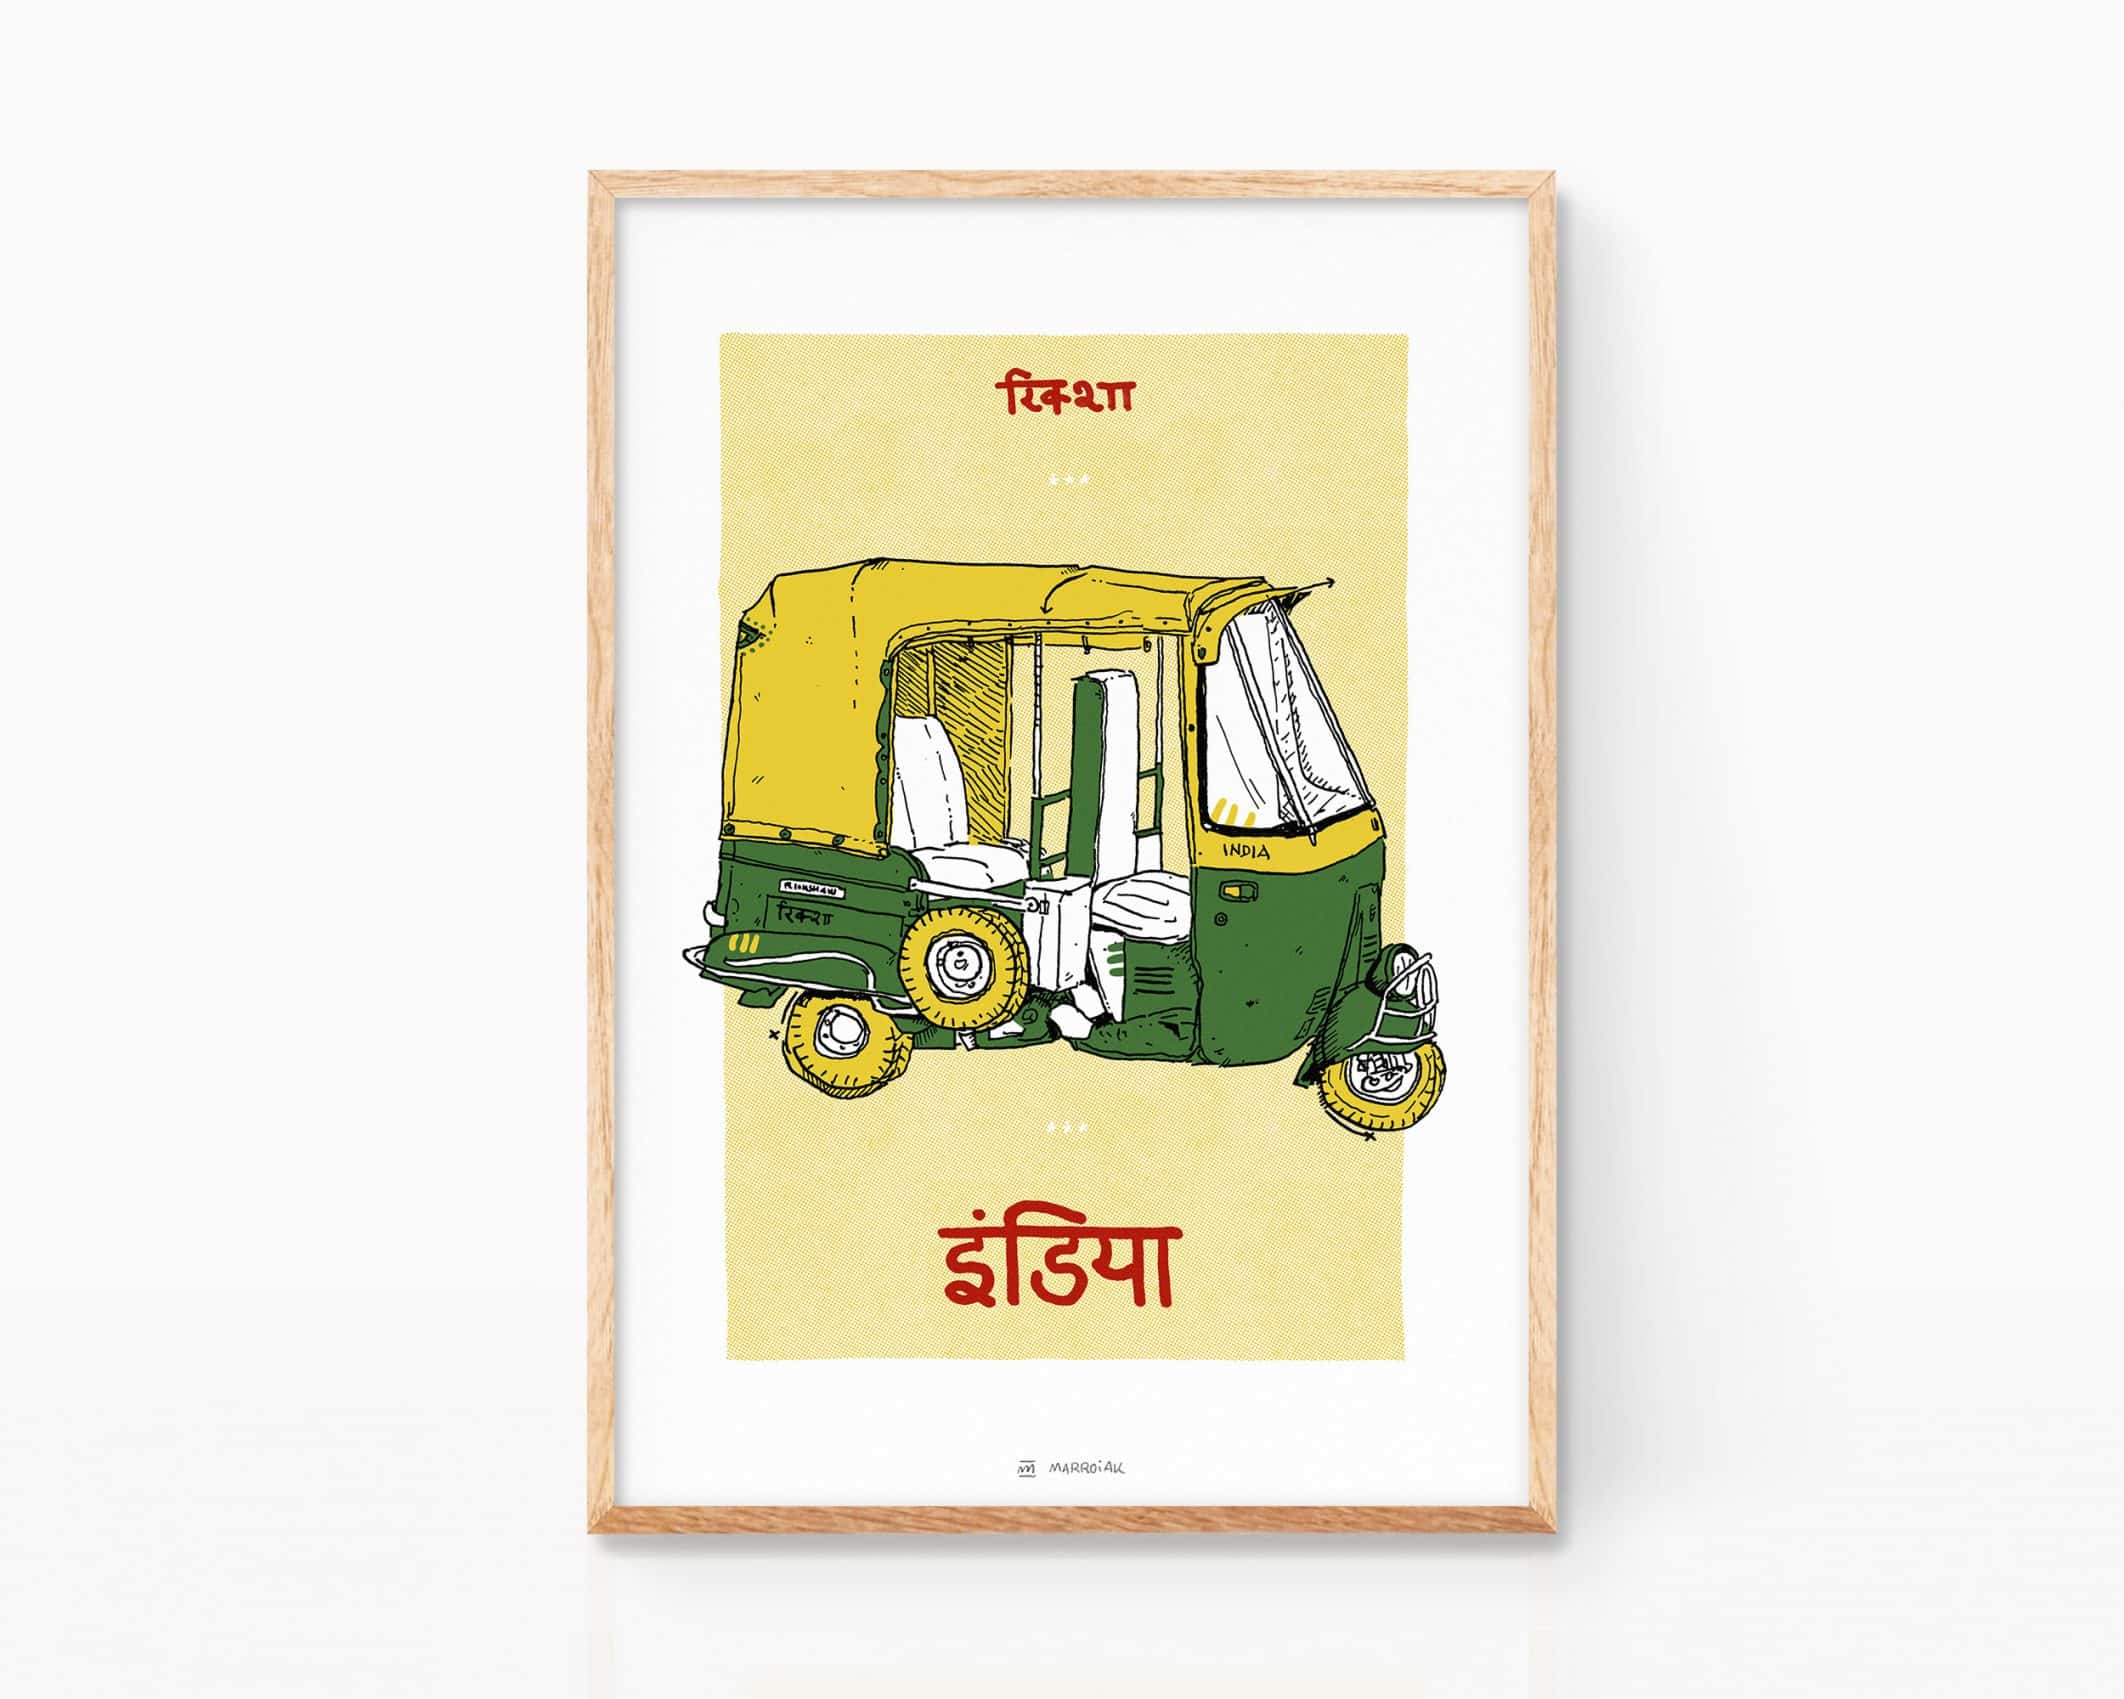 Cuadro para enmarcar decorativo con un dibujo de una rickshaw (tuk tuk) de la India. Ilustración de viaje. Cuadro para enmarcar.